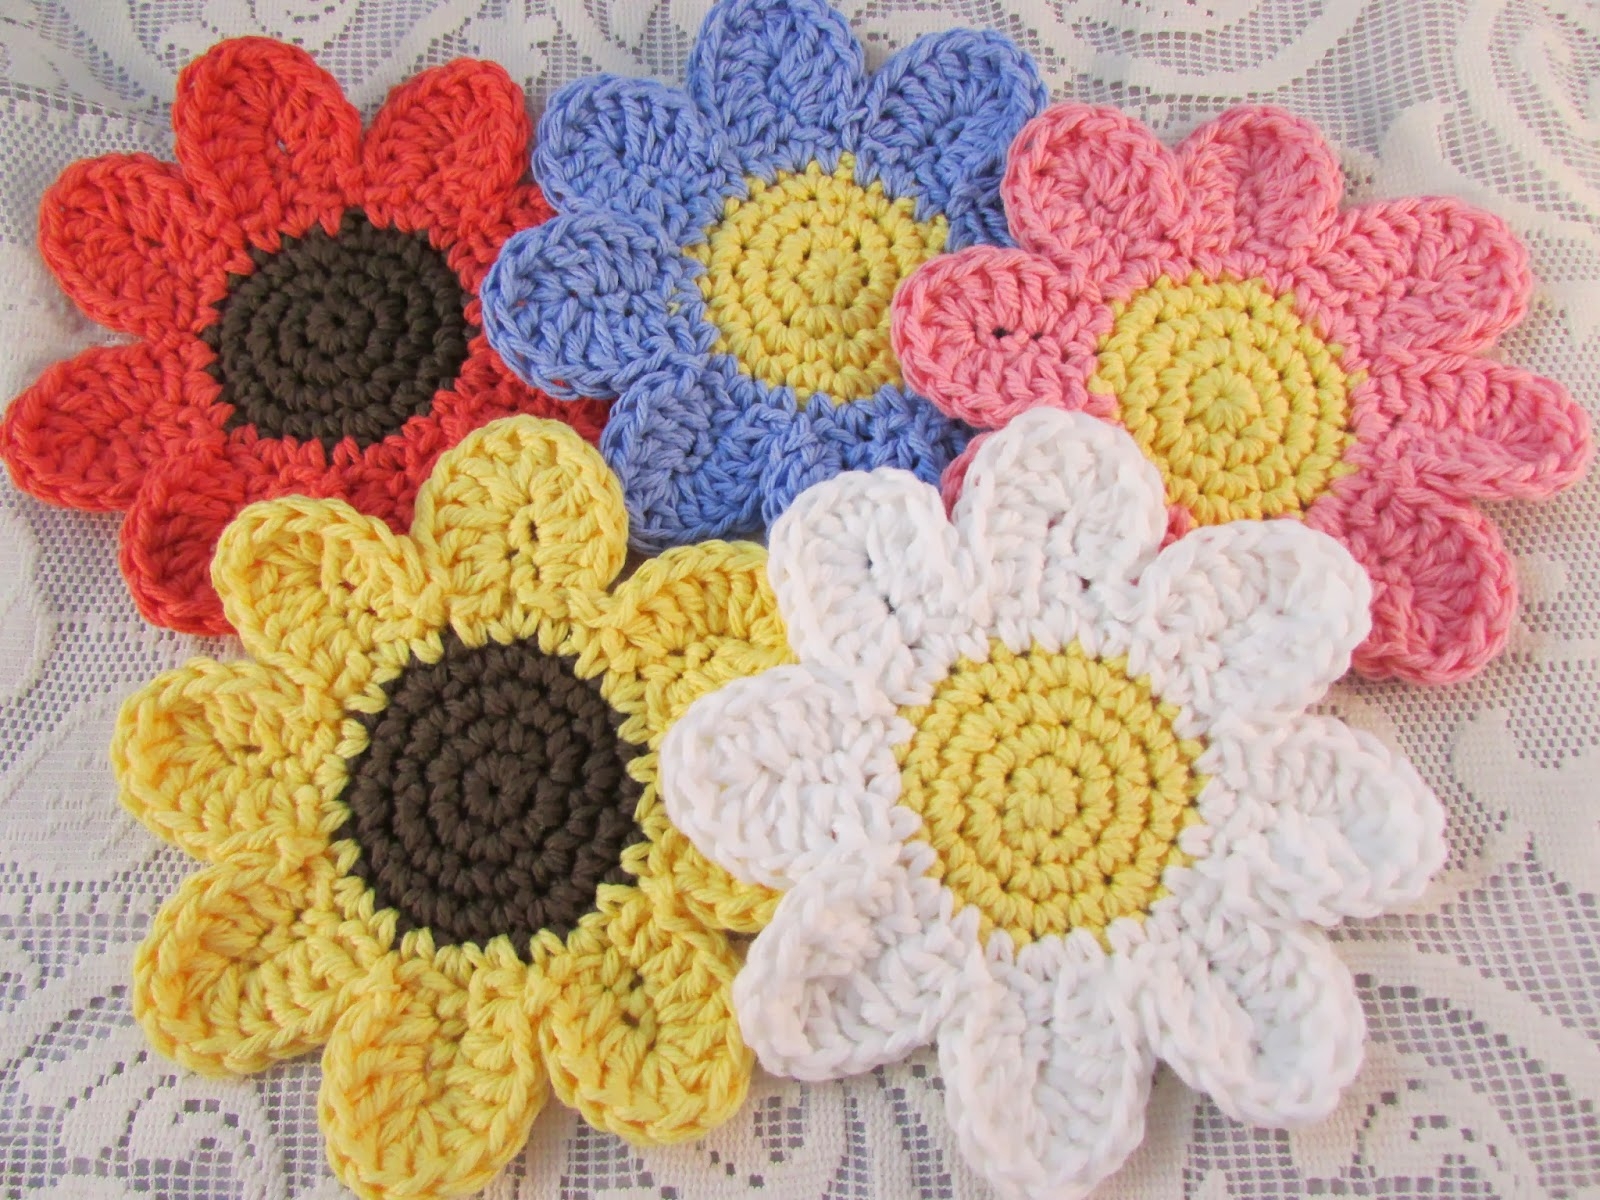 Coaster Crochet Pattern Free Patterns Beautiful Crocheted Daisy Coasters Knit And Crochet